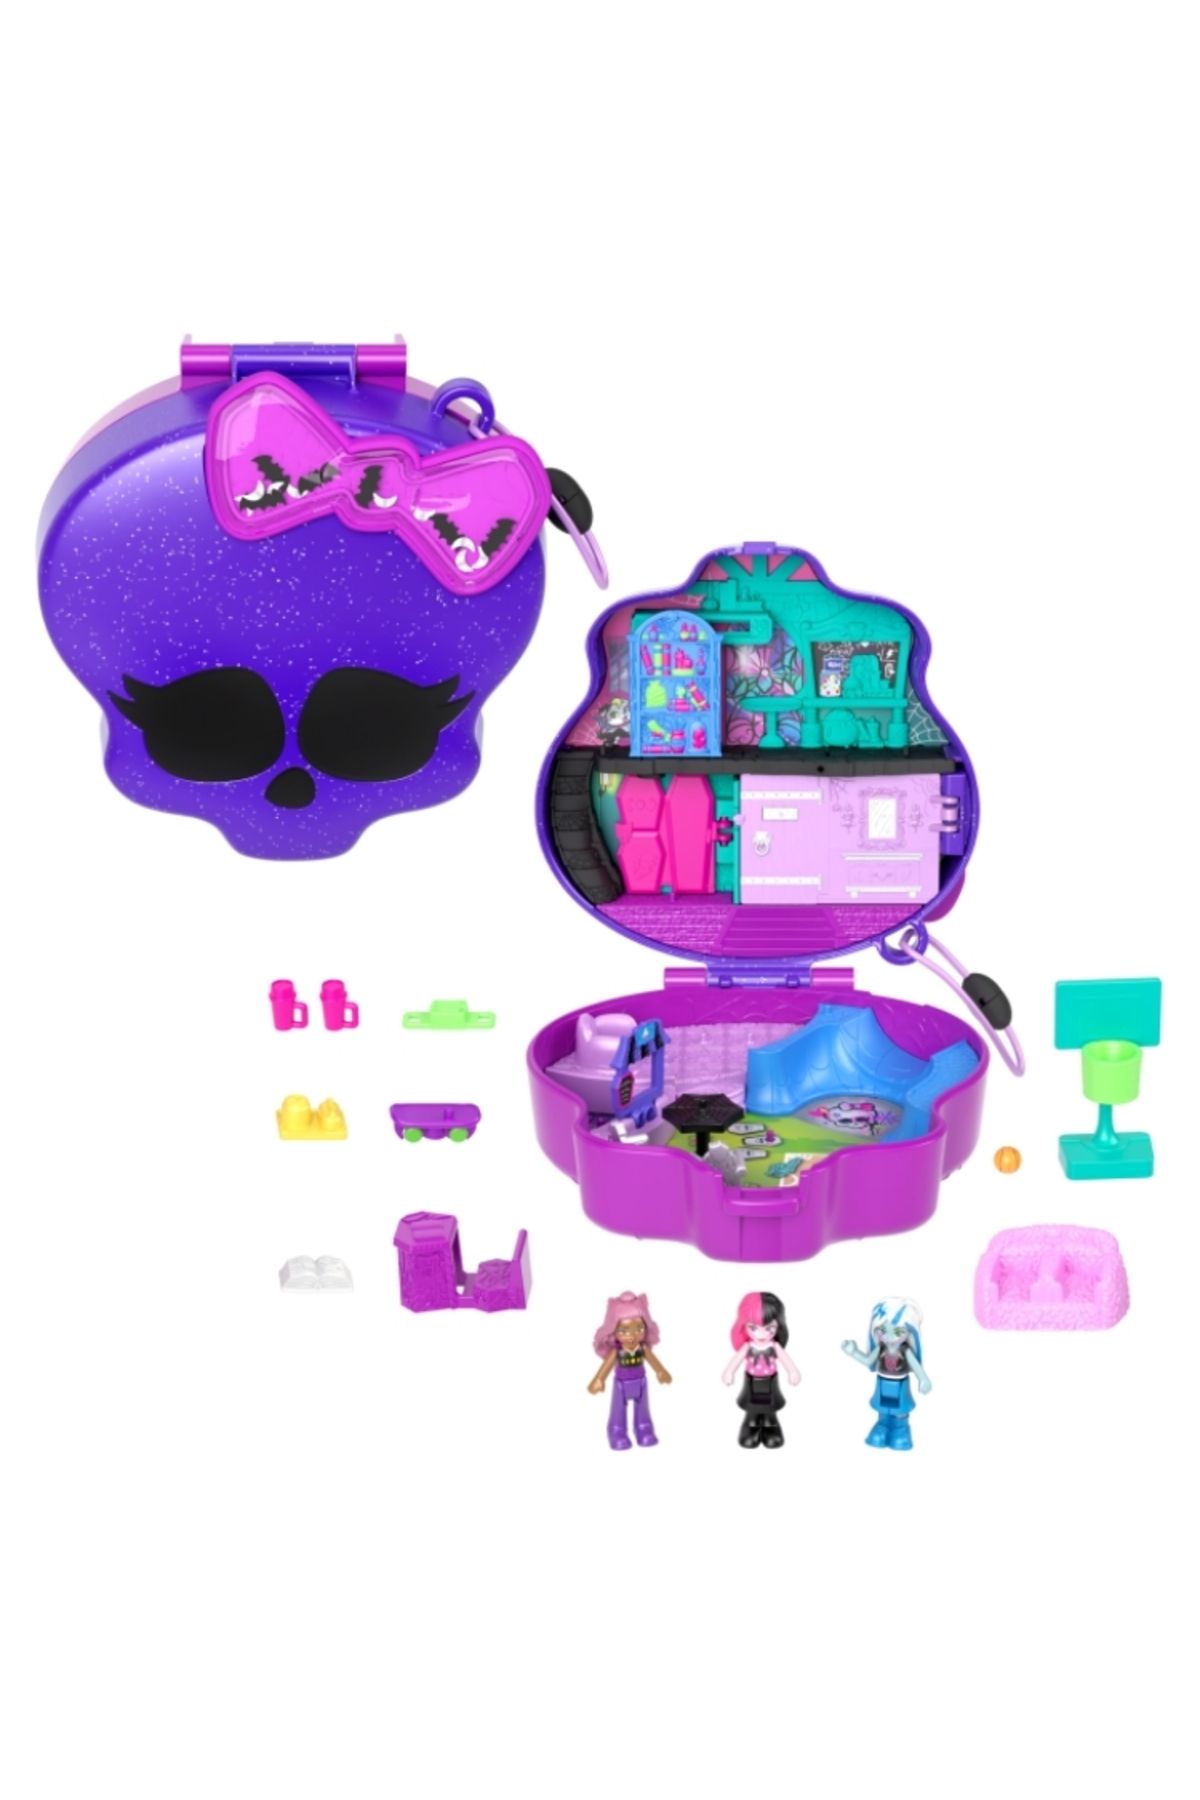 Polly Pocket Monster High Temalı Oyun Seti 3 Mini Bebek Ve 10 Aksesuar Lisanslı Ürün